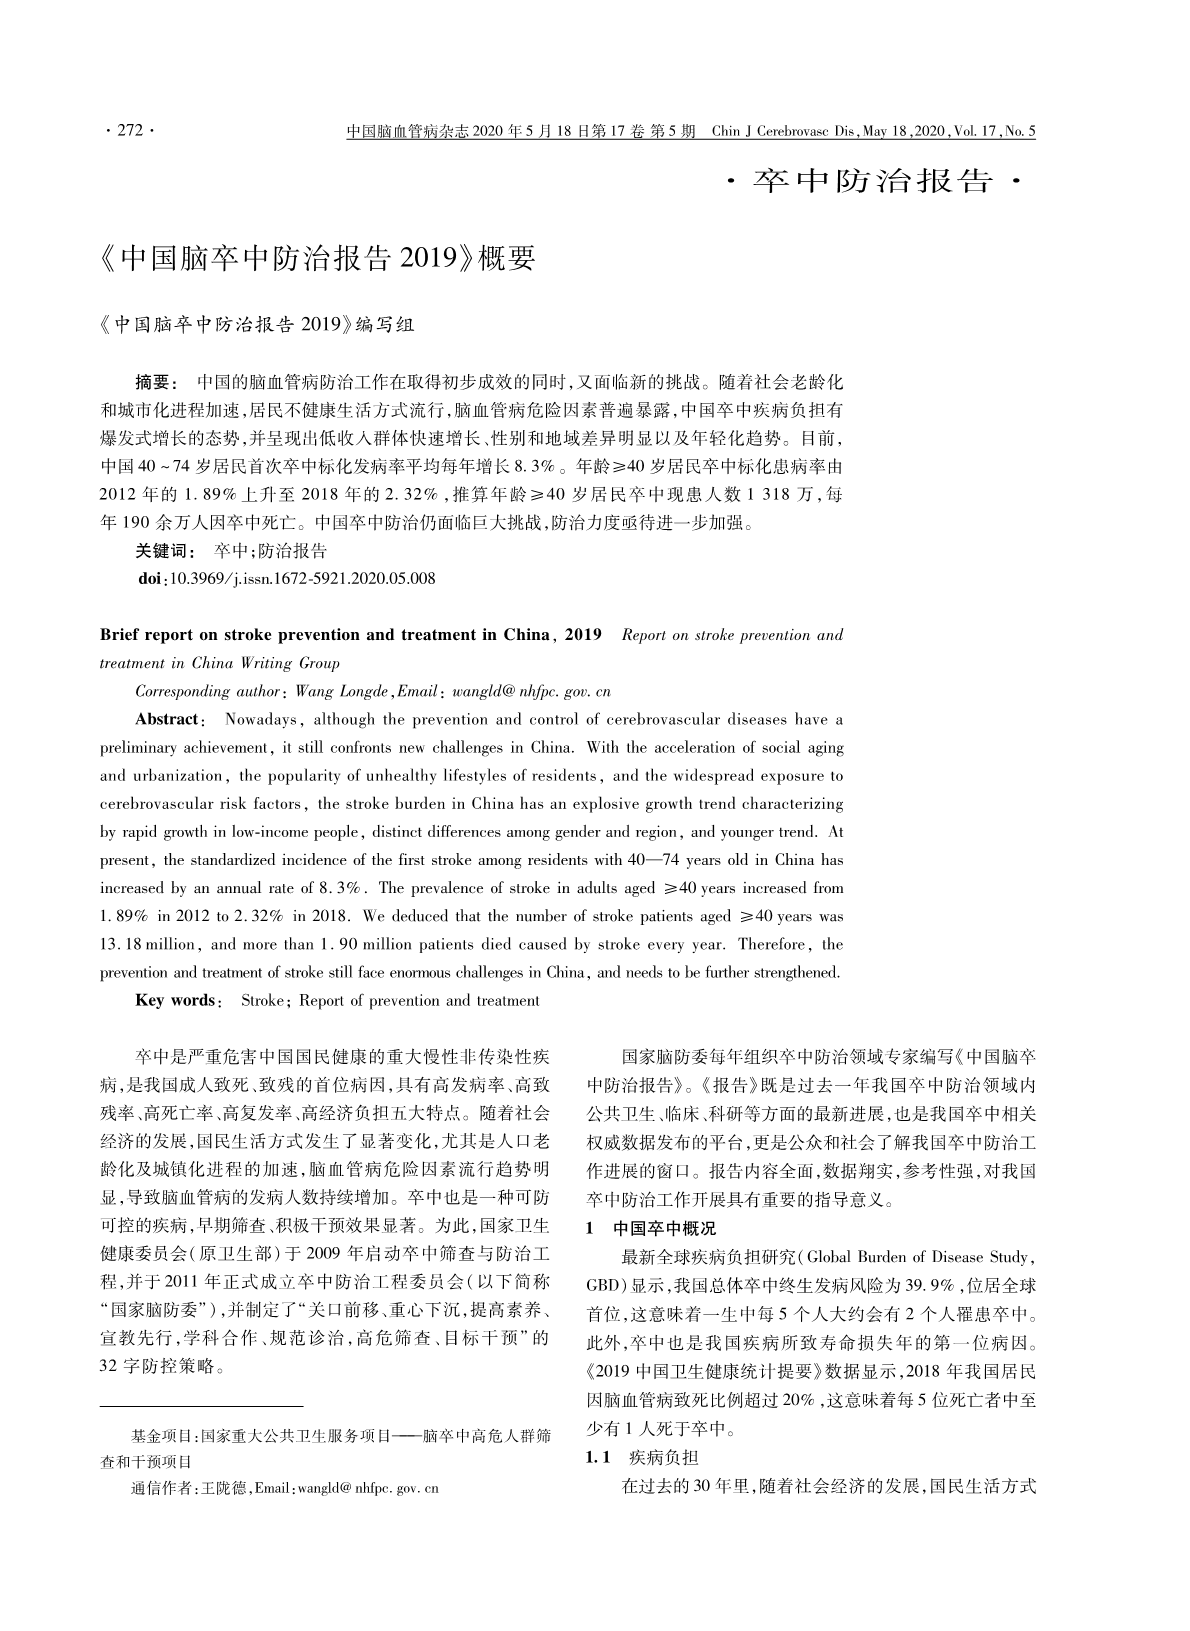 学术交流：《中国脑卒中防治报告2019 》概要